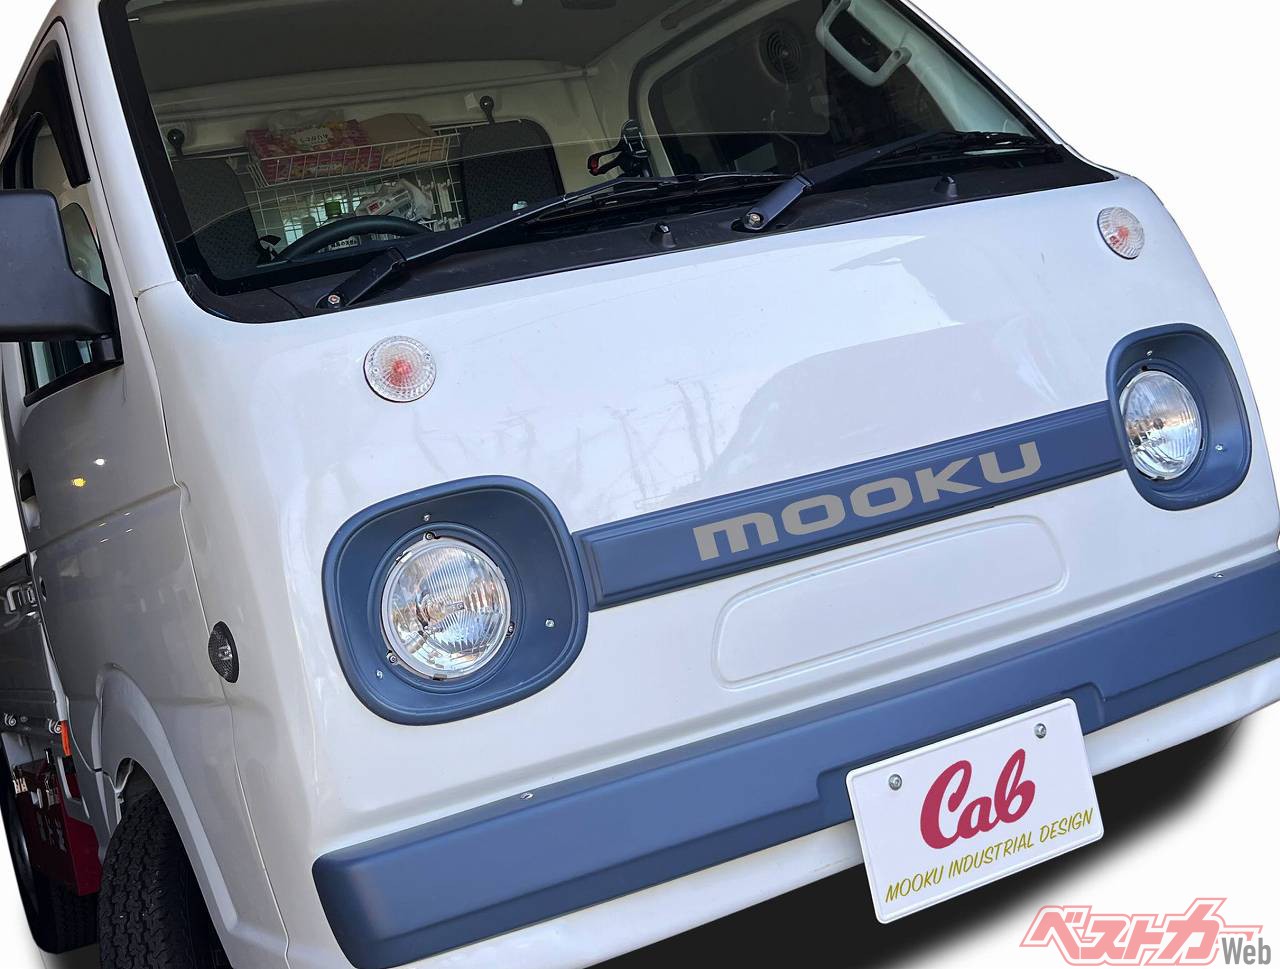 25万円でレトロな軽トラに ムークが作ったマツダポーター風キャブが激カワ 自動車情報誌 ベストカー